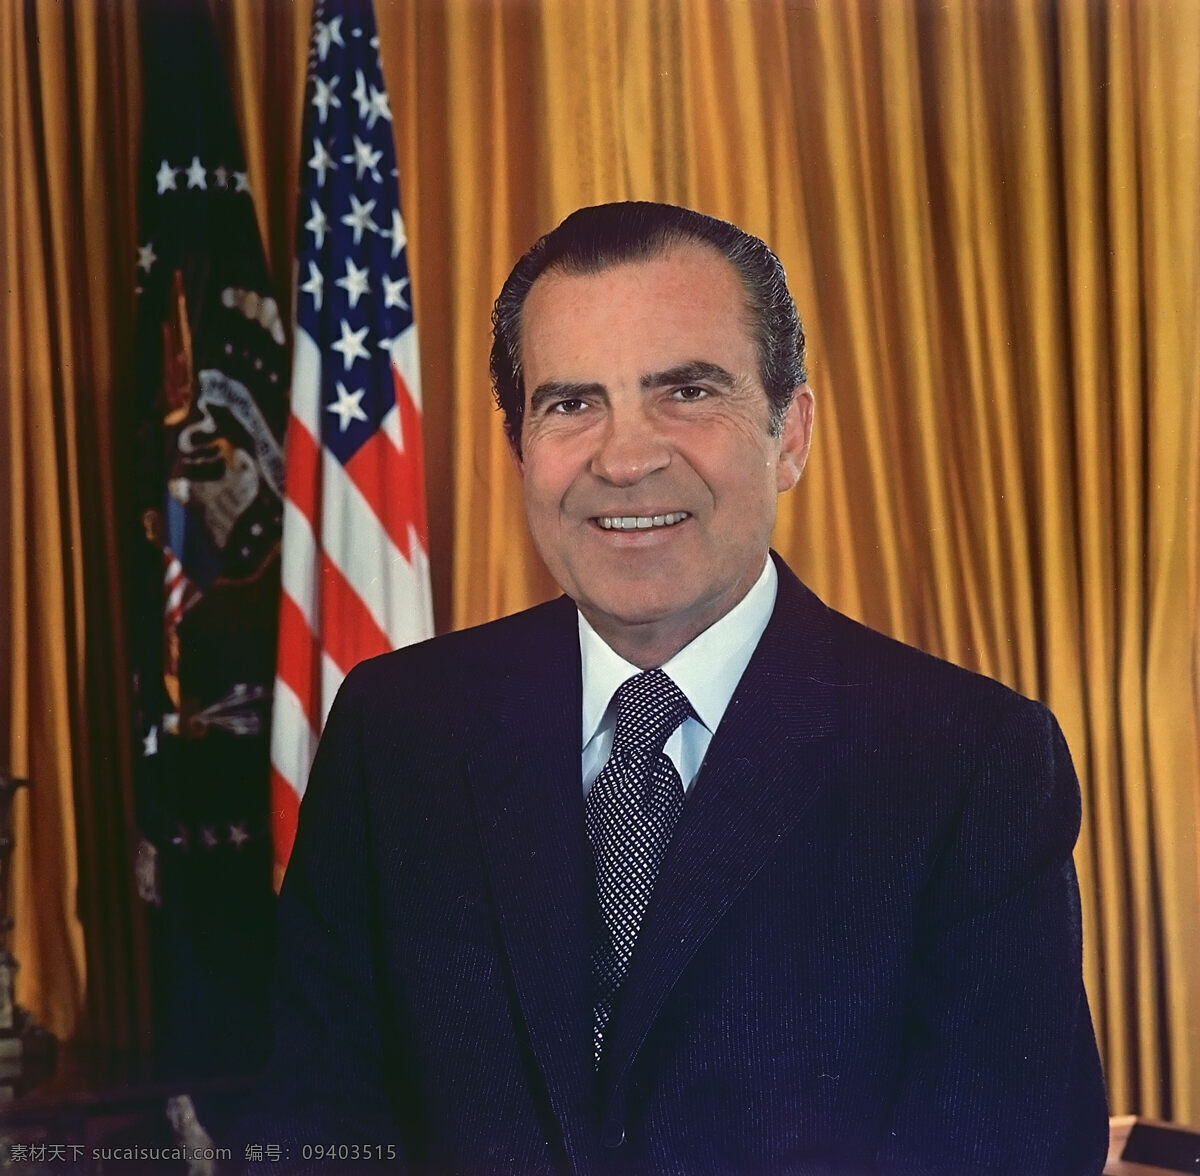 美国第 37 任总 统 理查德 尼克松 政坛人物 美国 第37任 总统 理查德尼克松 国旗 职业人物 人物图库